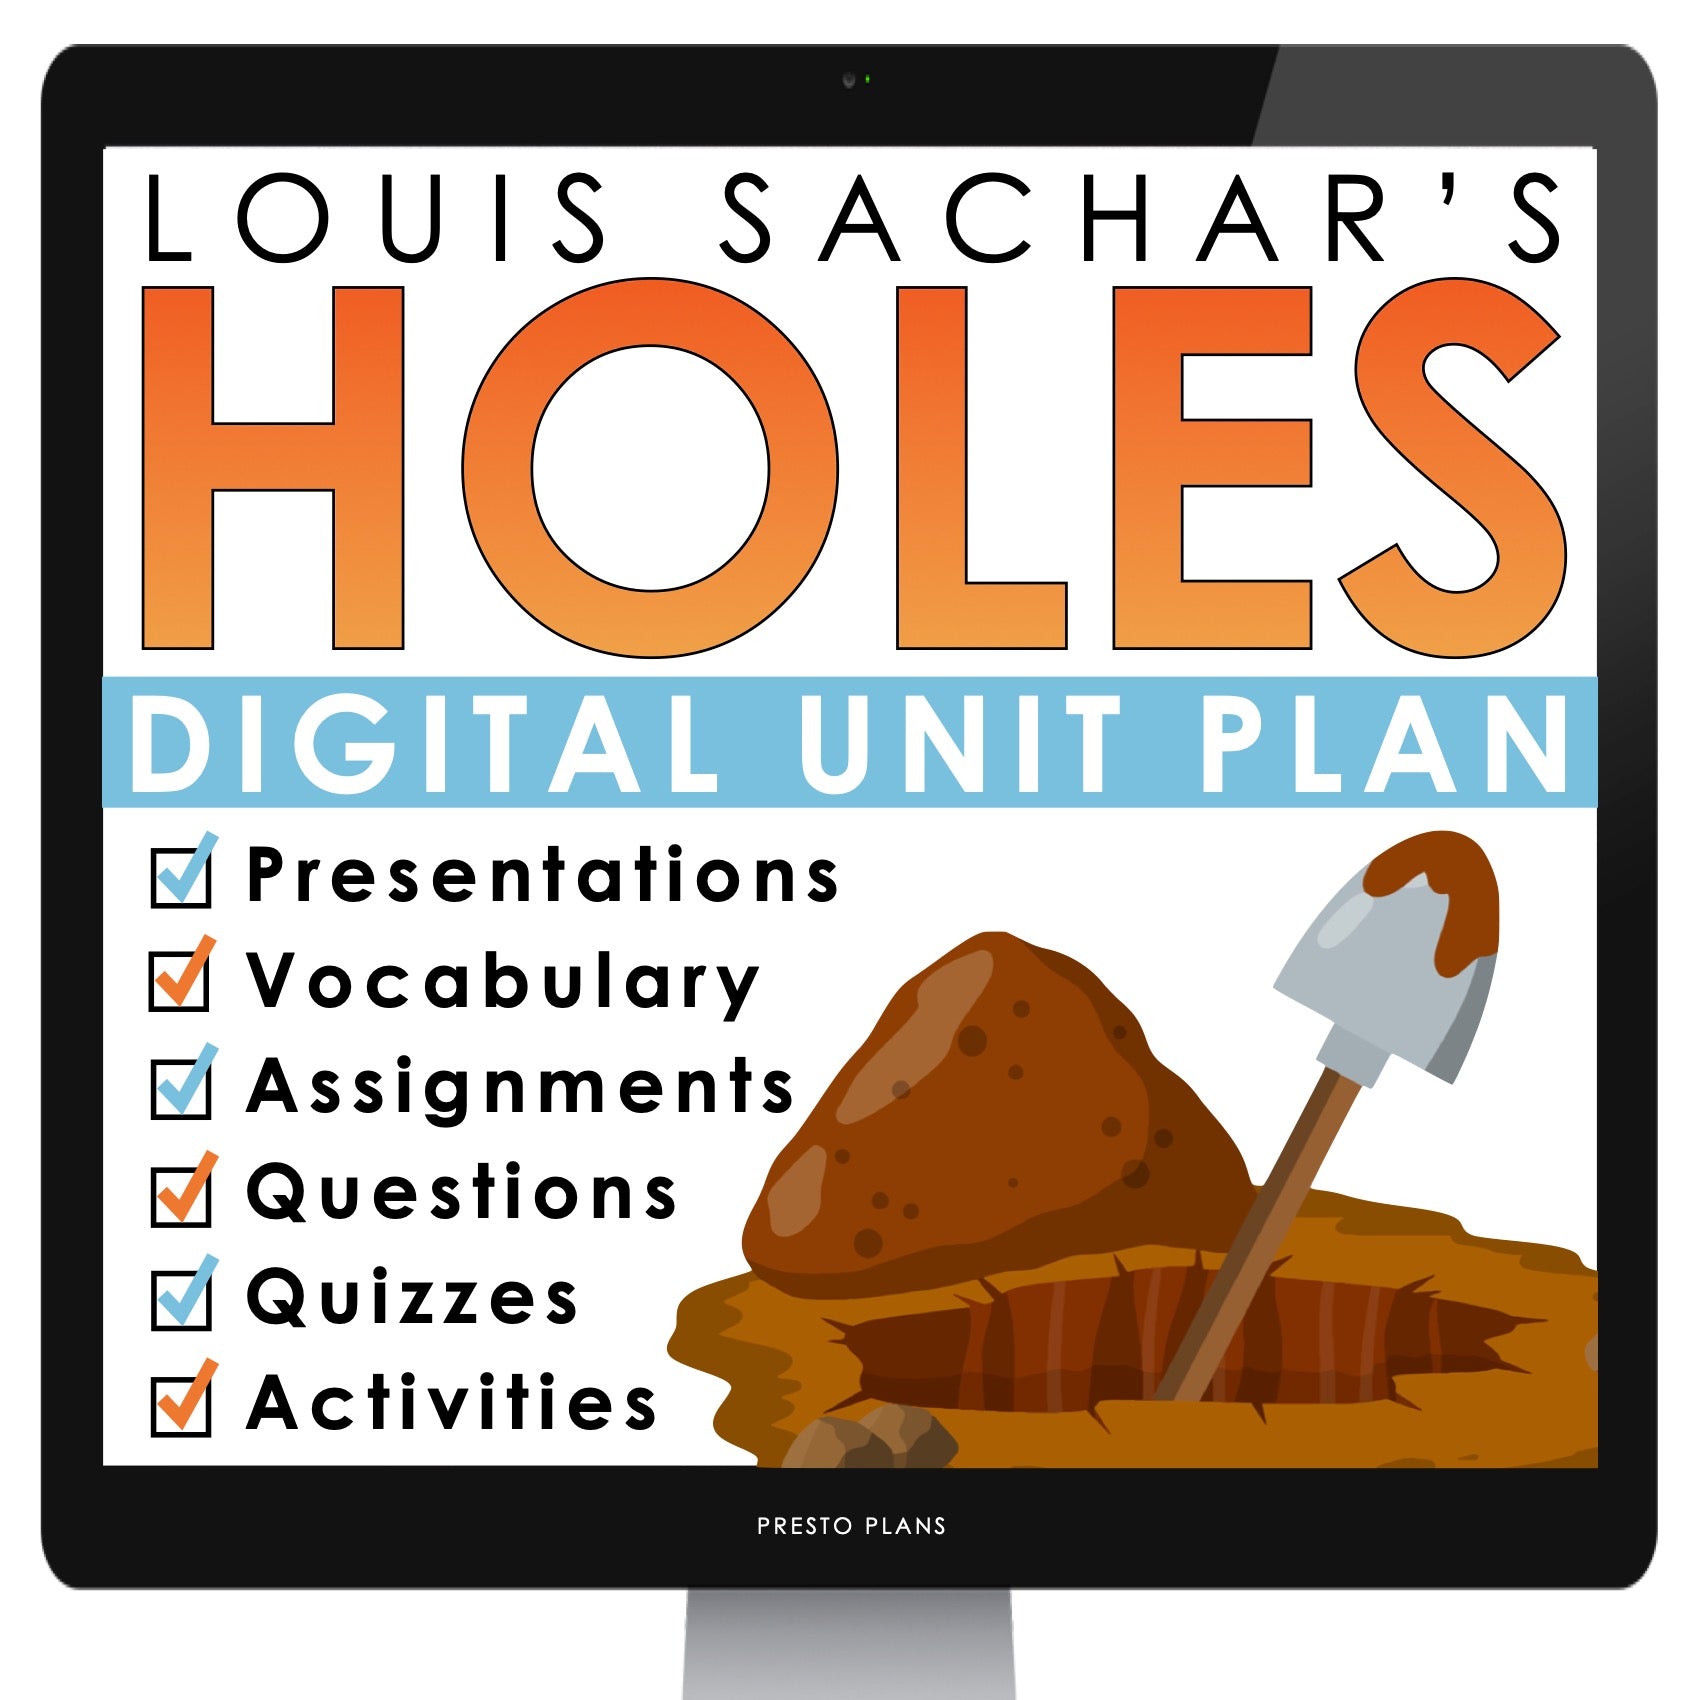 holes by louis sachar book 2